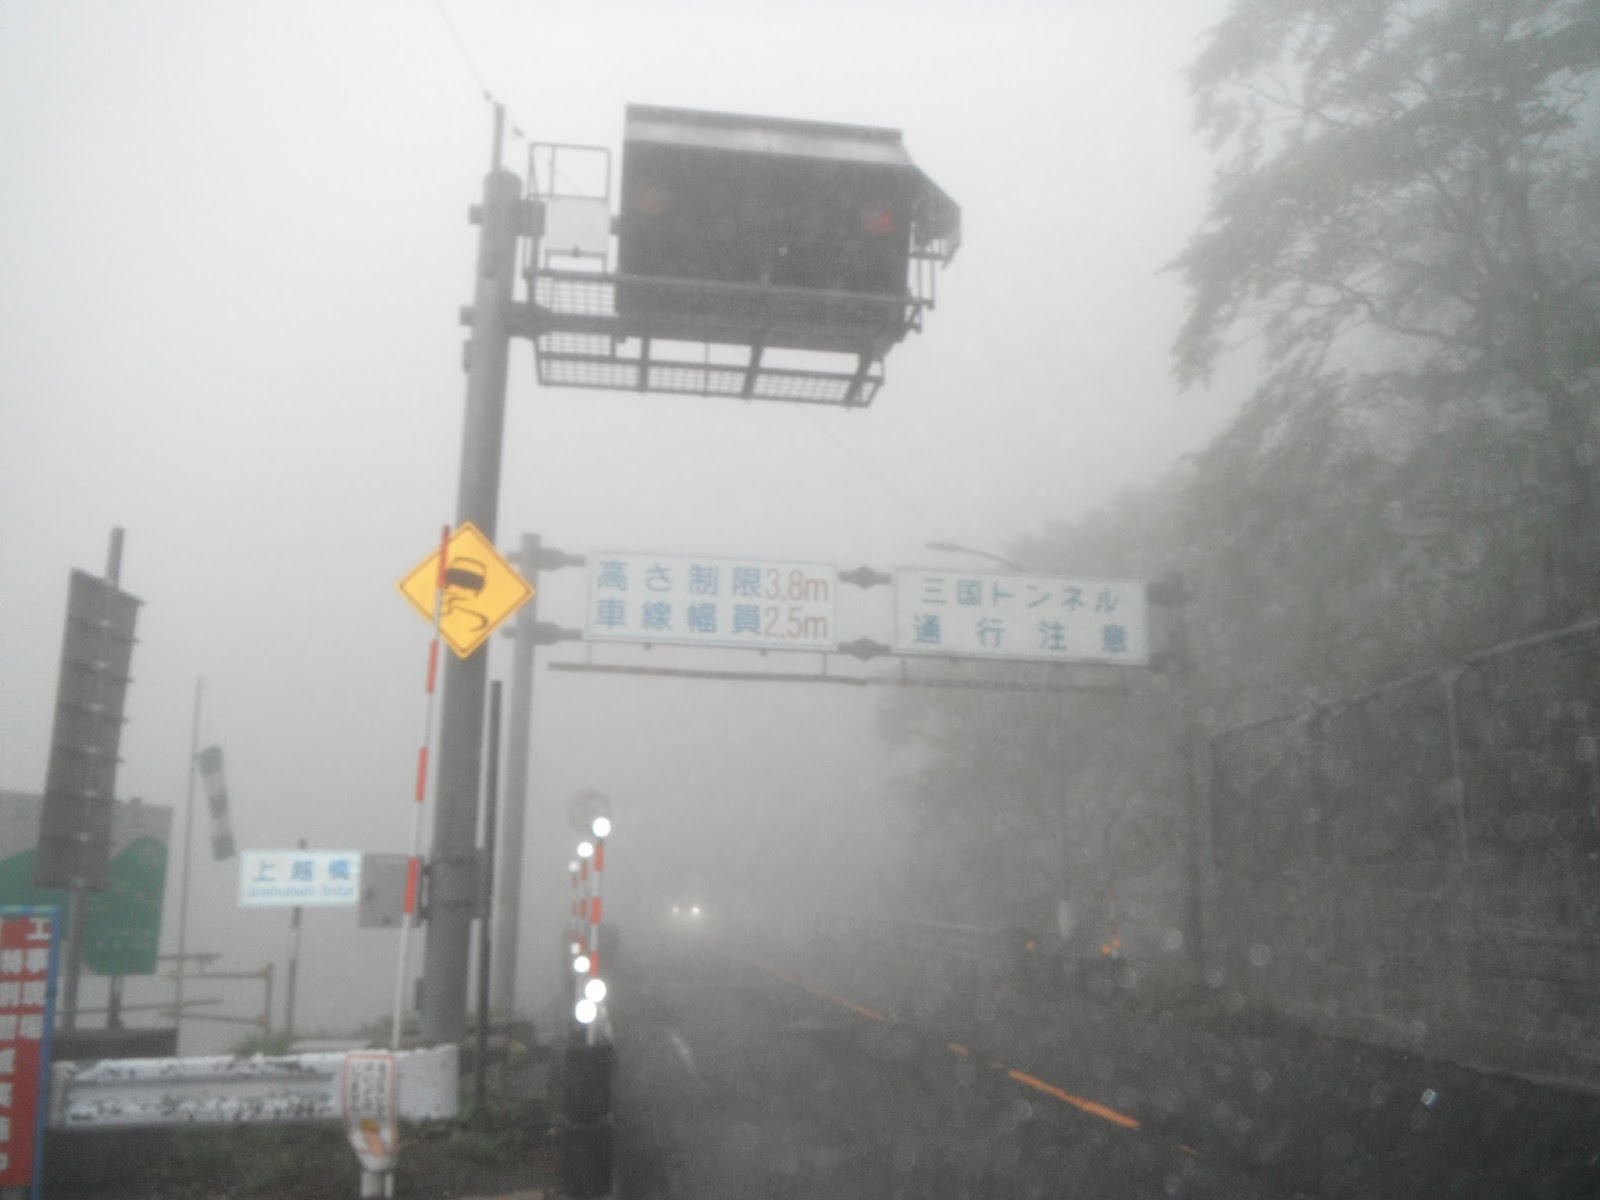 山旅三昧 国道17号 三国トンネル から新潟県に入る